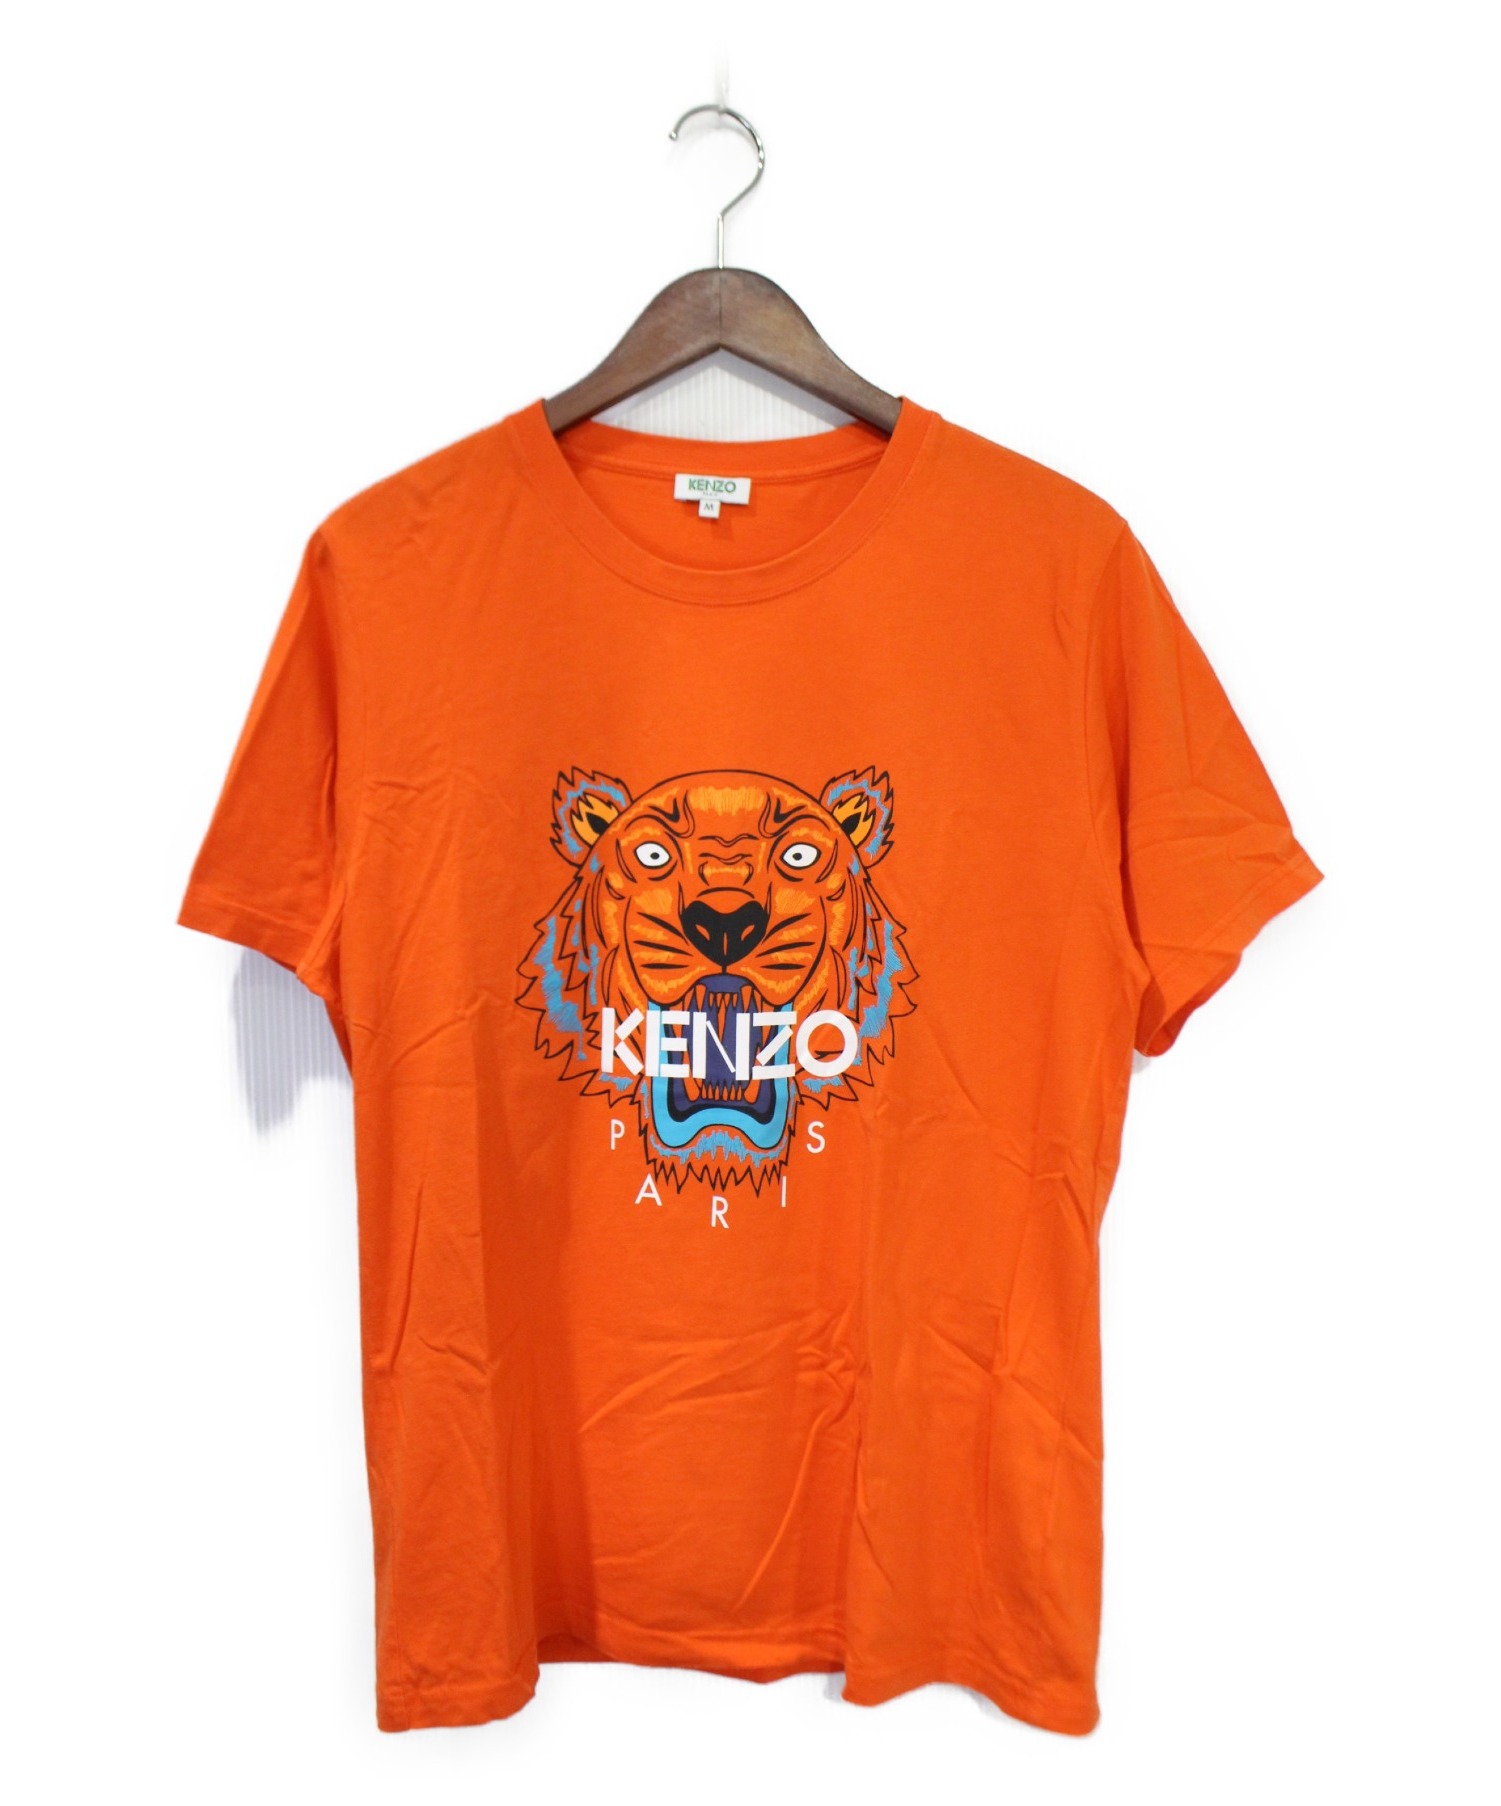 KENZO (ケンゾー) タイガープリントTシャツ オレンジ サイズ:M